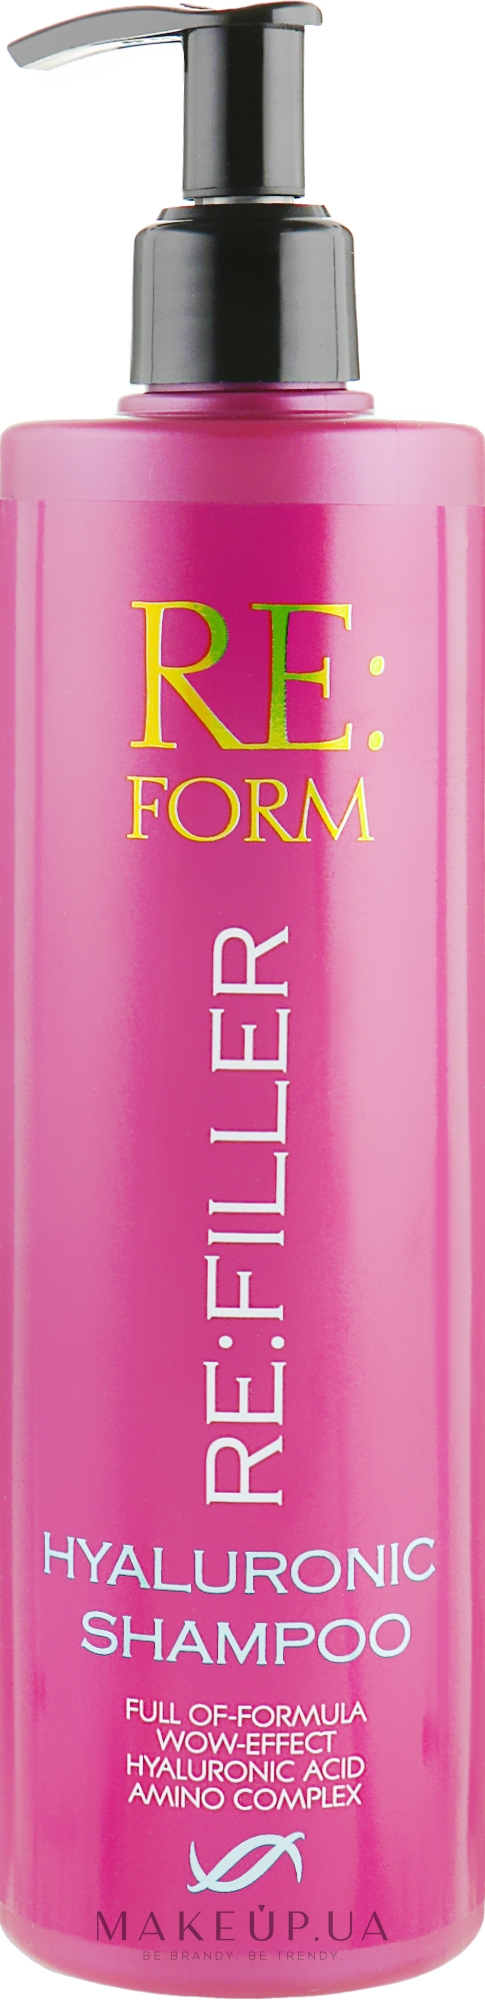 Гиалуроновый шампунь для объема и увлажнения волос - Re:form Re:filler Hyaluronic Shampoo — фото 400ml